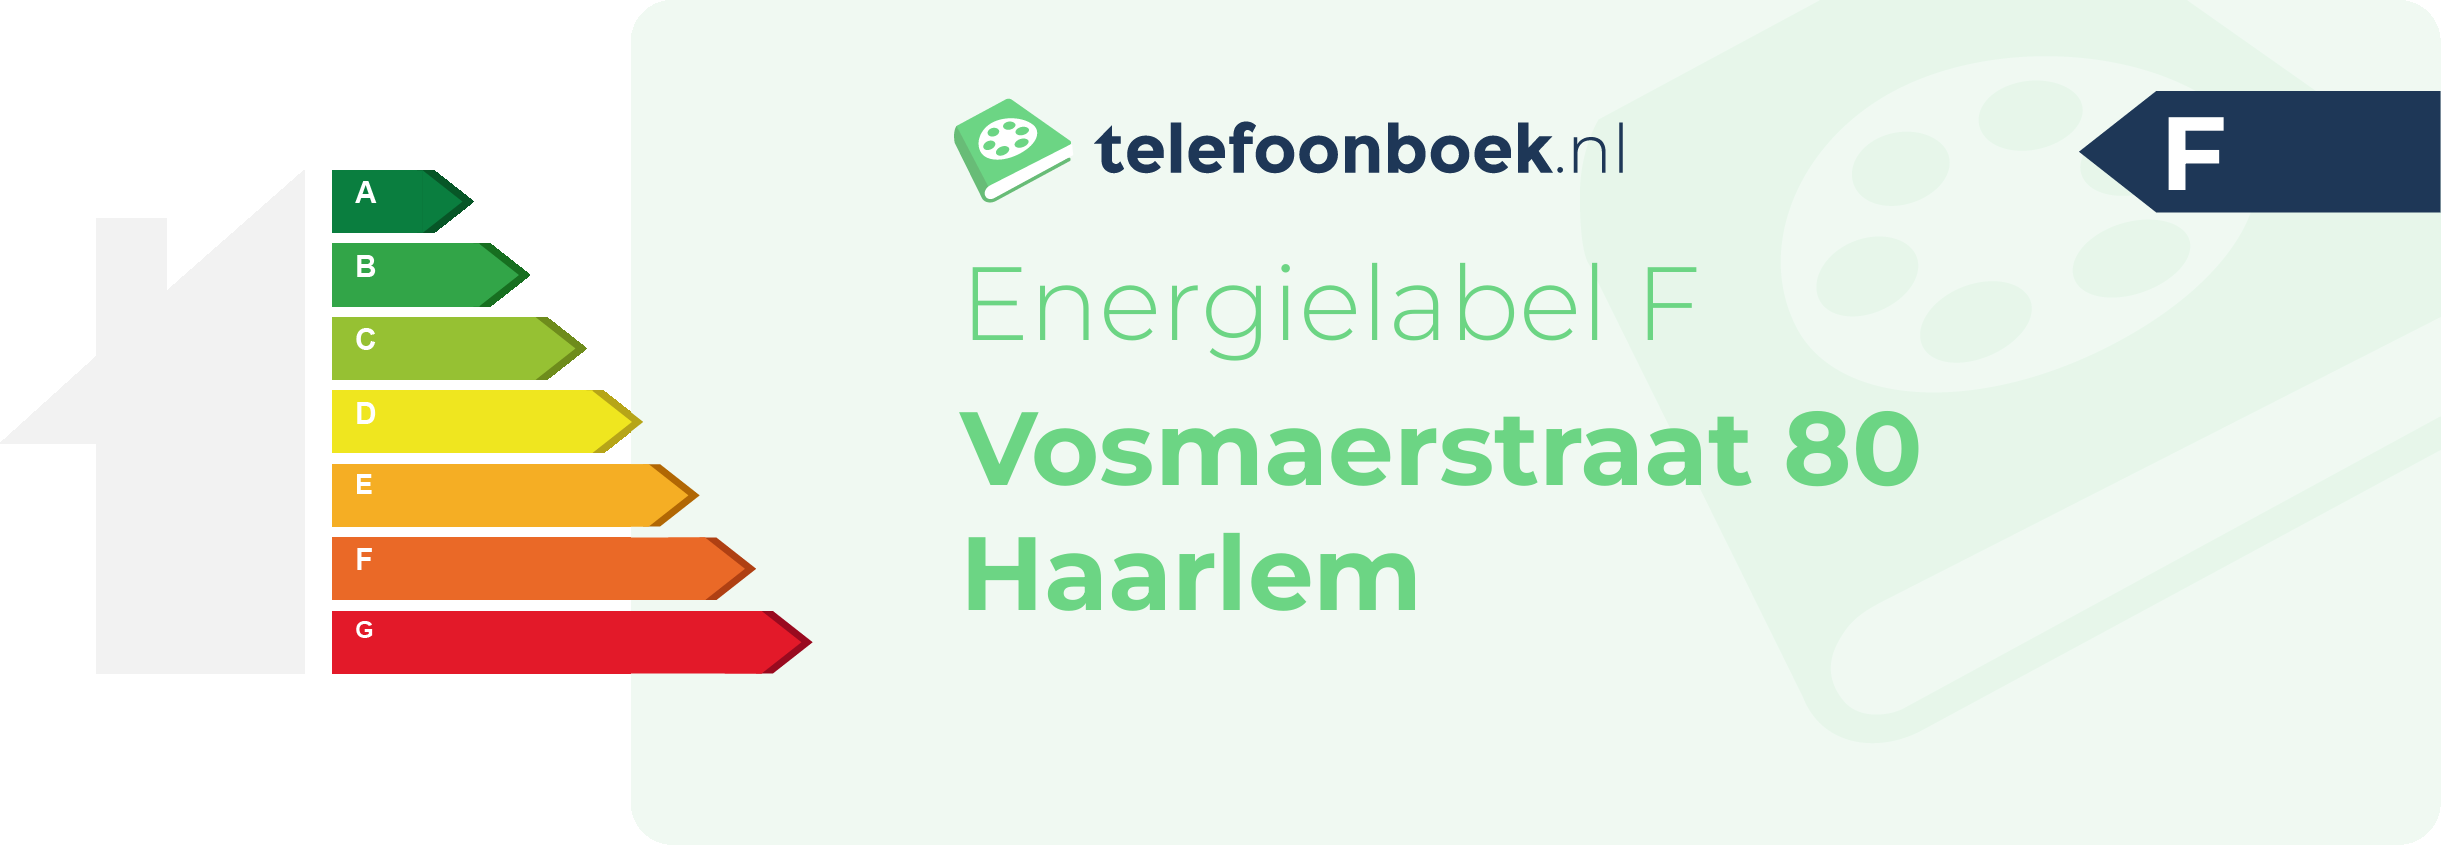 Energielabel Vosmaerstraat 80 Haarlem